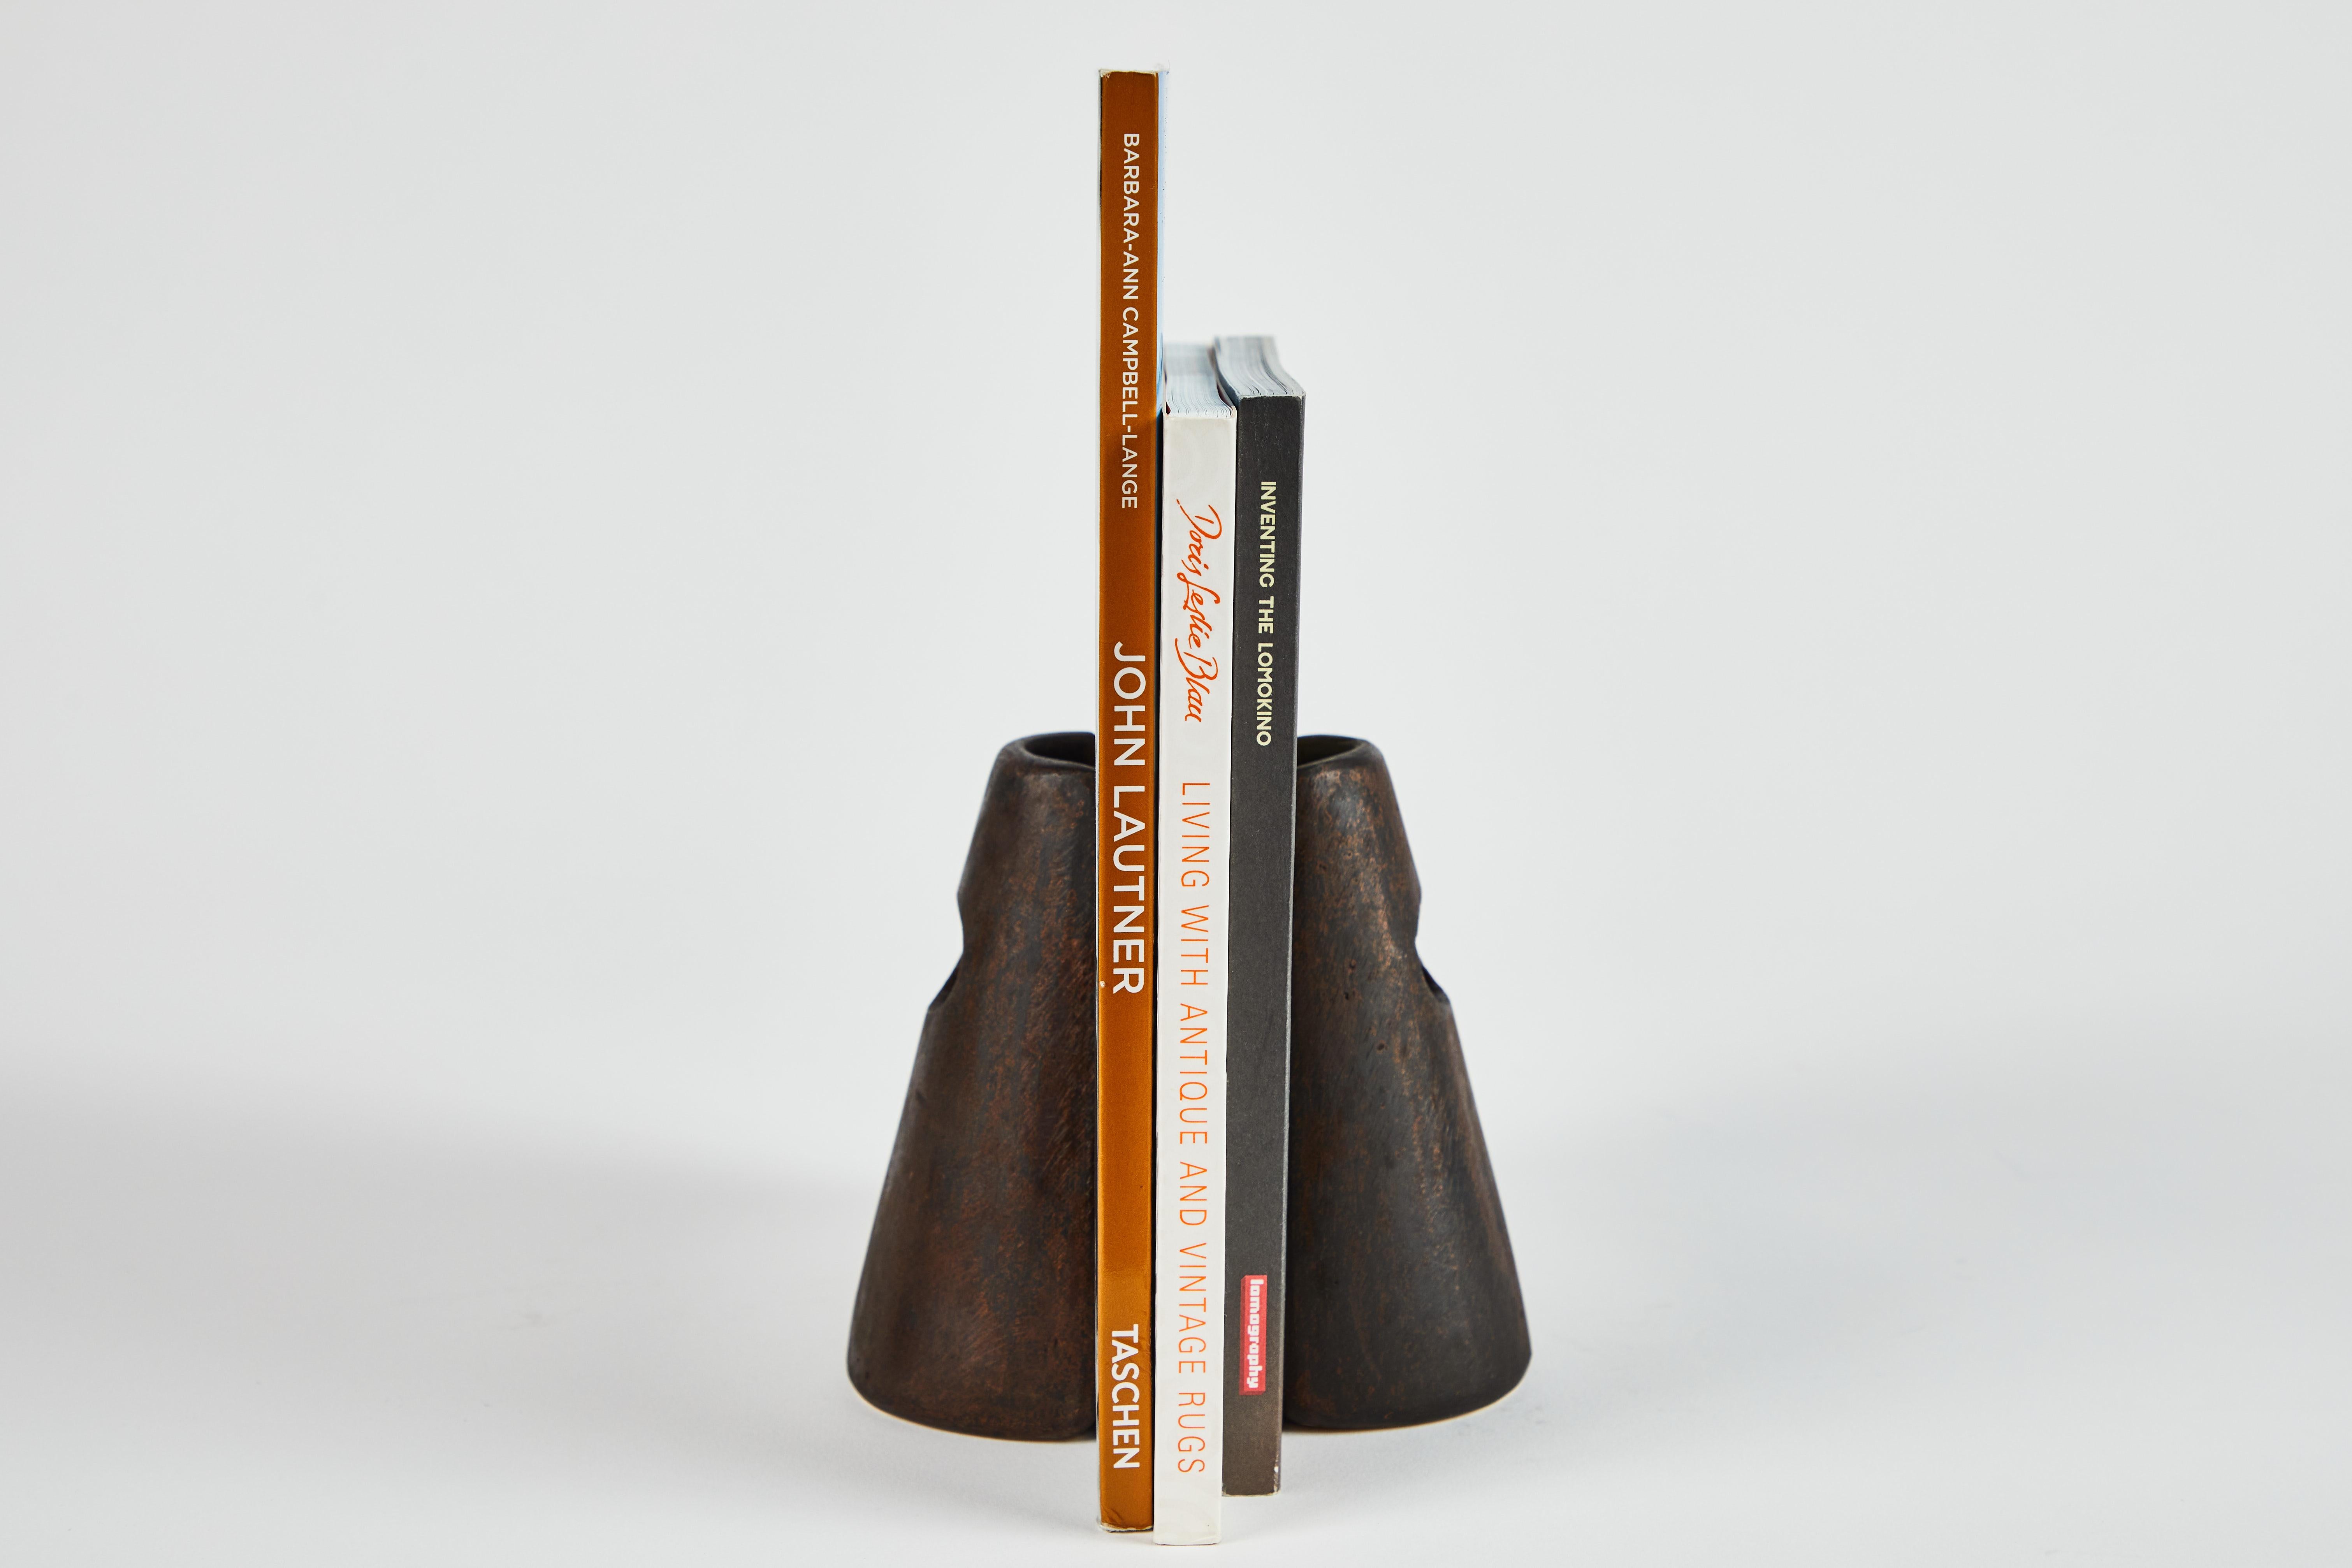 Ein Paar Carl Auböck Modell #4842 patinierte Messing Buchstützen. Dieses unglaublich raffinierte und skulpturale Paar Buchstützen wurde in den 1950er Jahren entworfen und ist aus patiniertem Messing gefertigt. 

Der Preis gilt für das Paar. Zwei